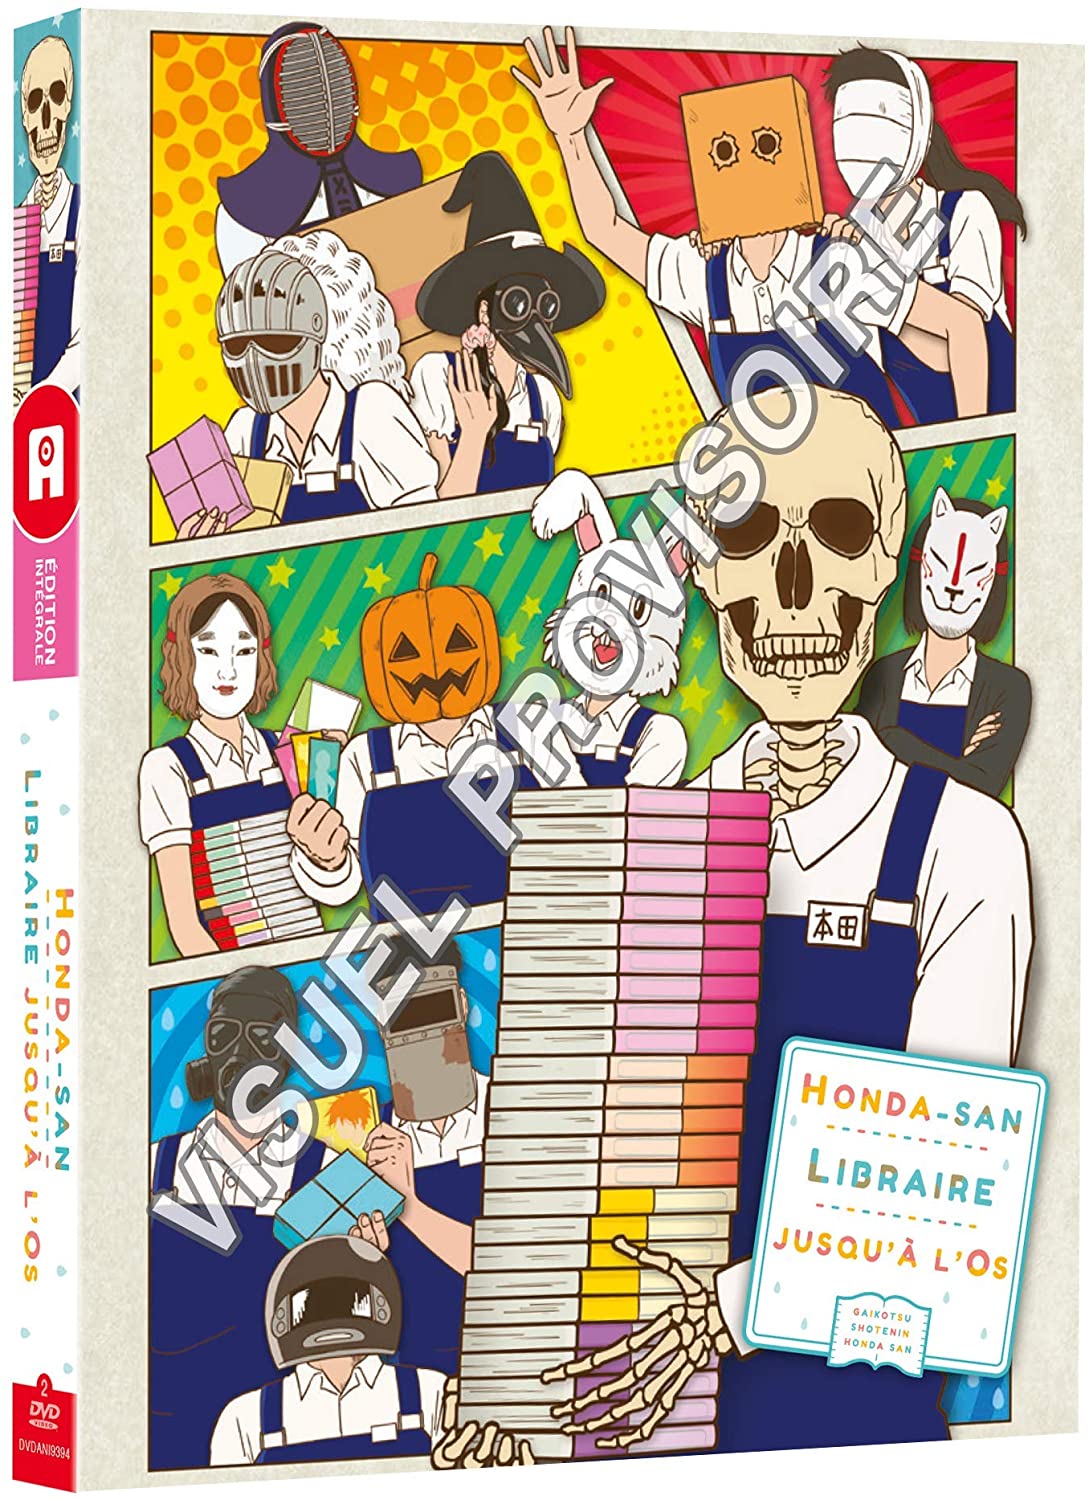 Honda-san, libraire jusqu'à l'os chez @Anime 81dggr10